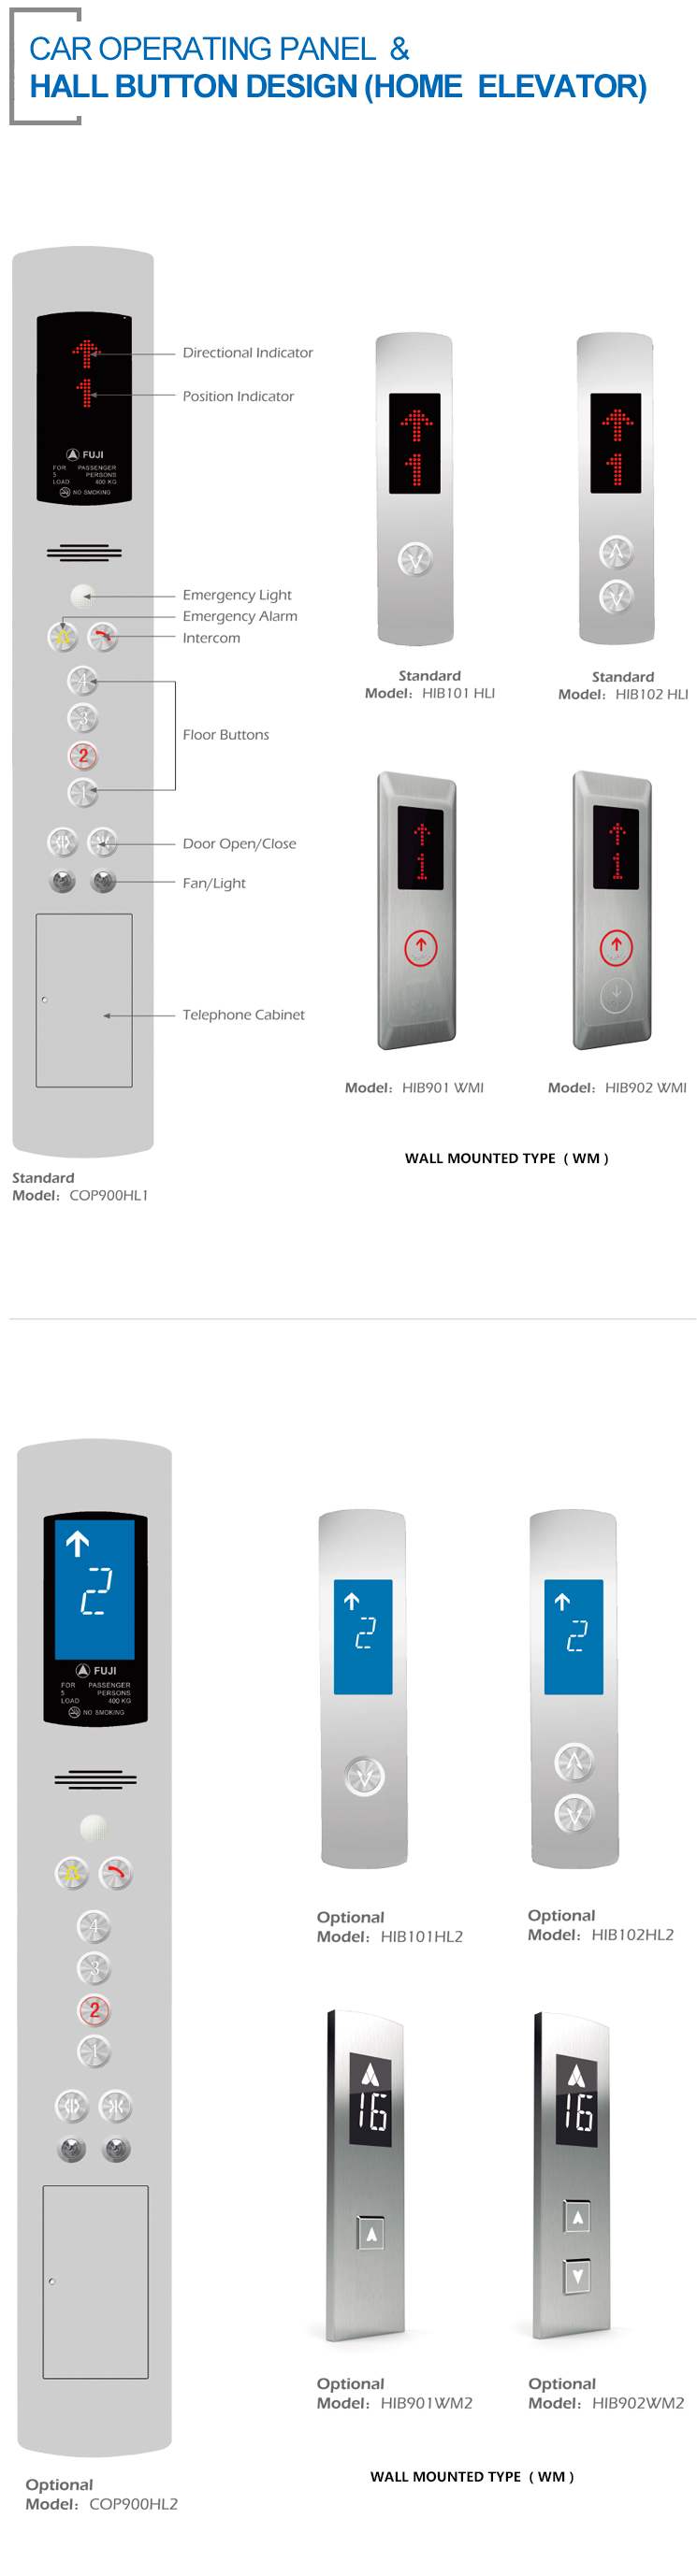 11配件Car-Operating-Panel-&-Hall-Button-Design(Home-Elevator)（四级页面）.jpg